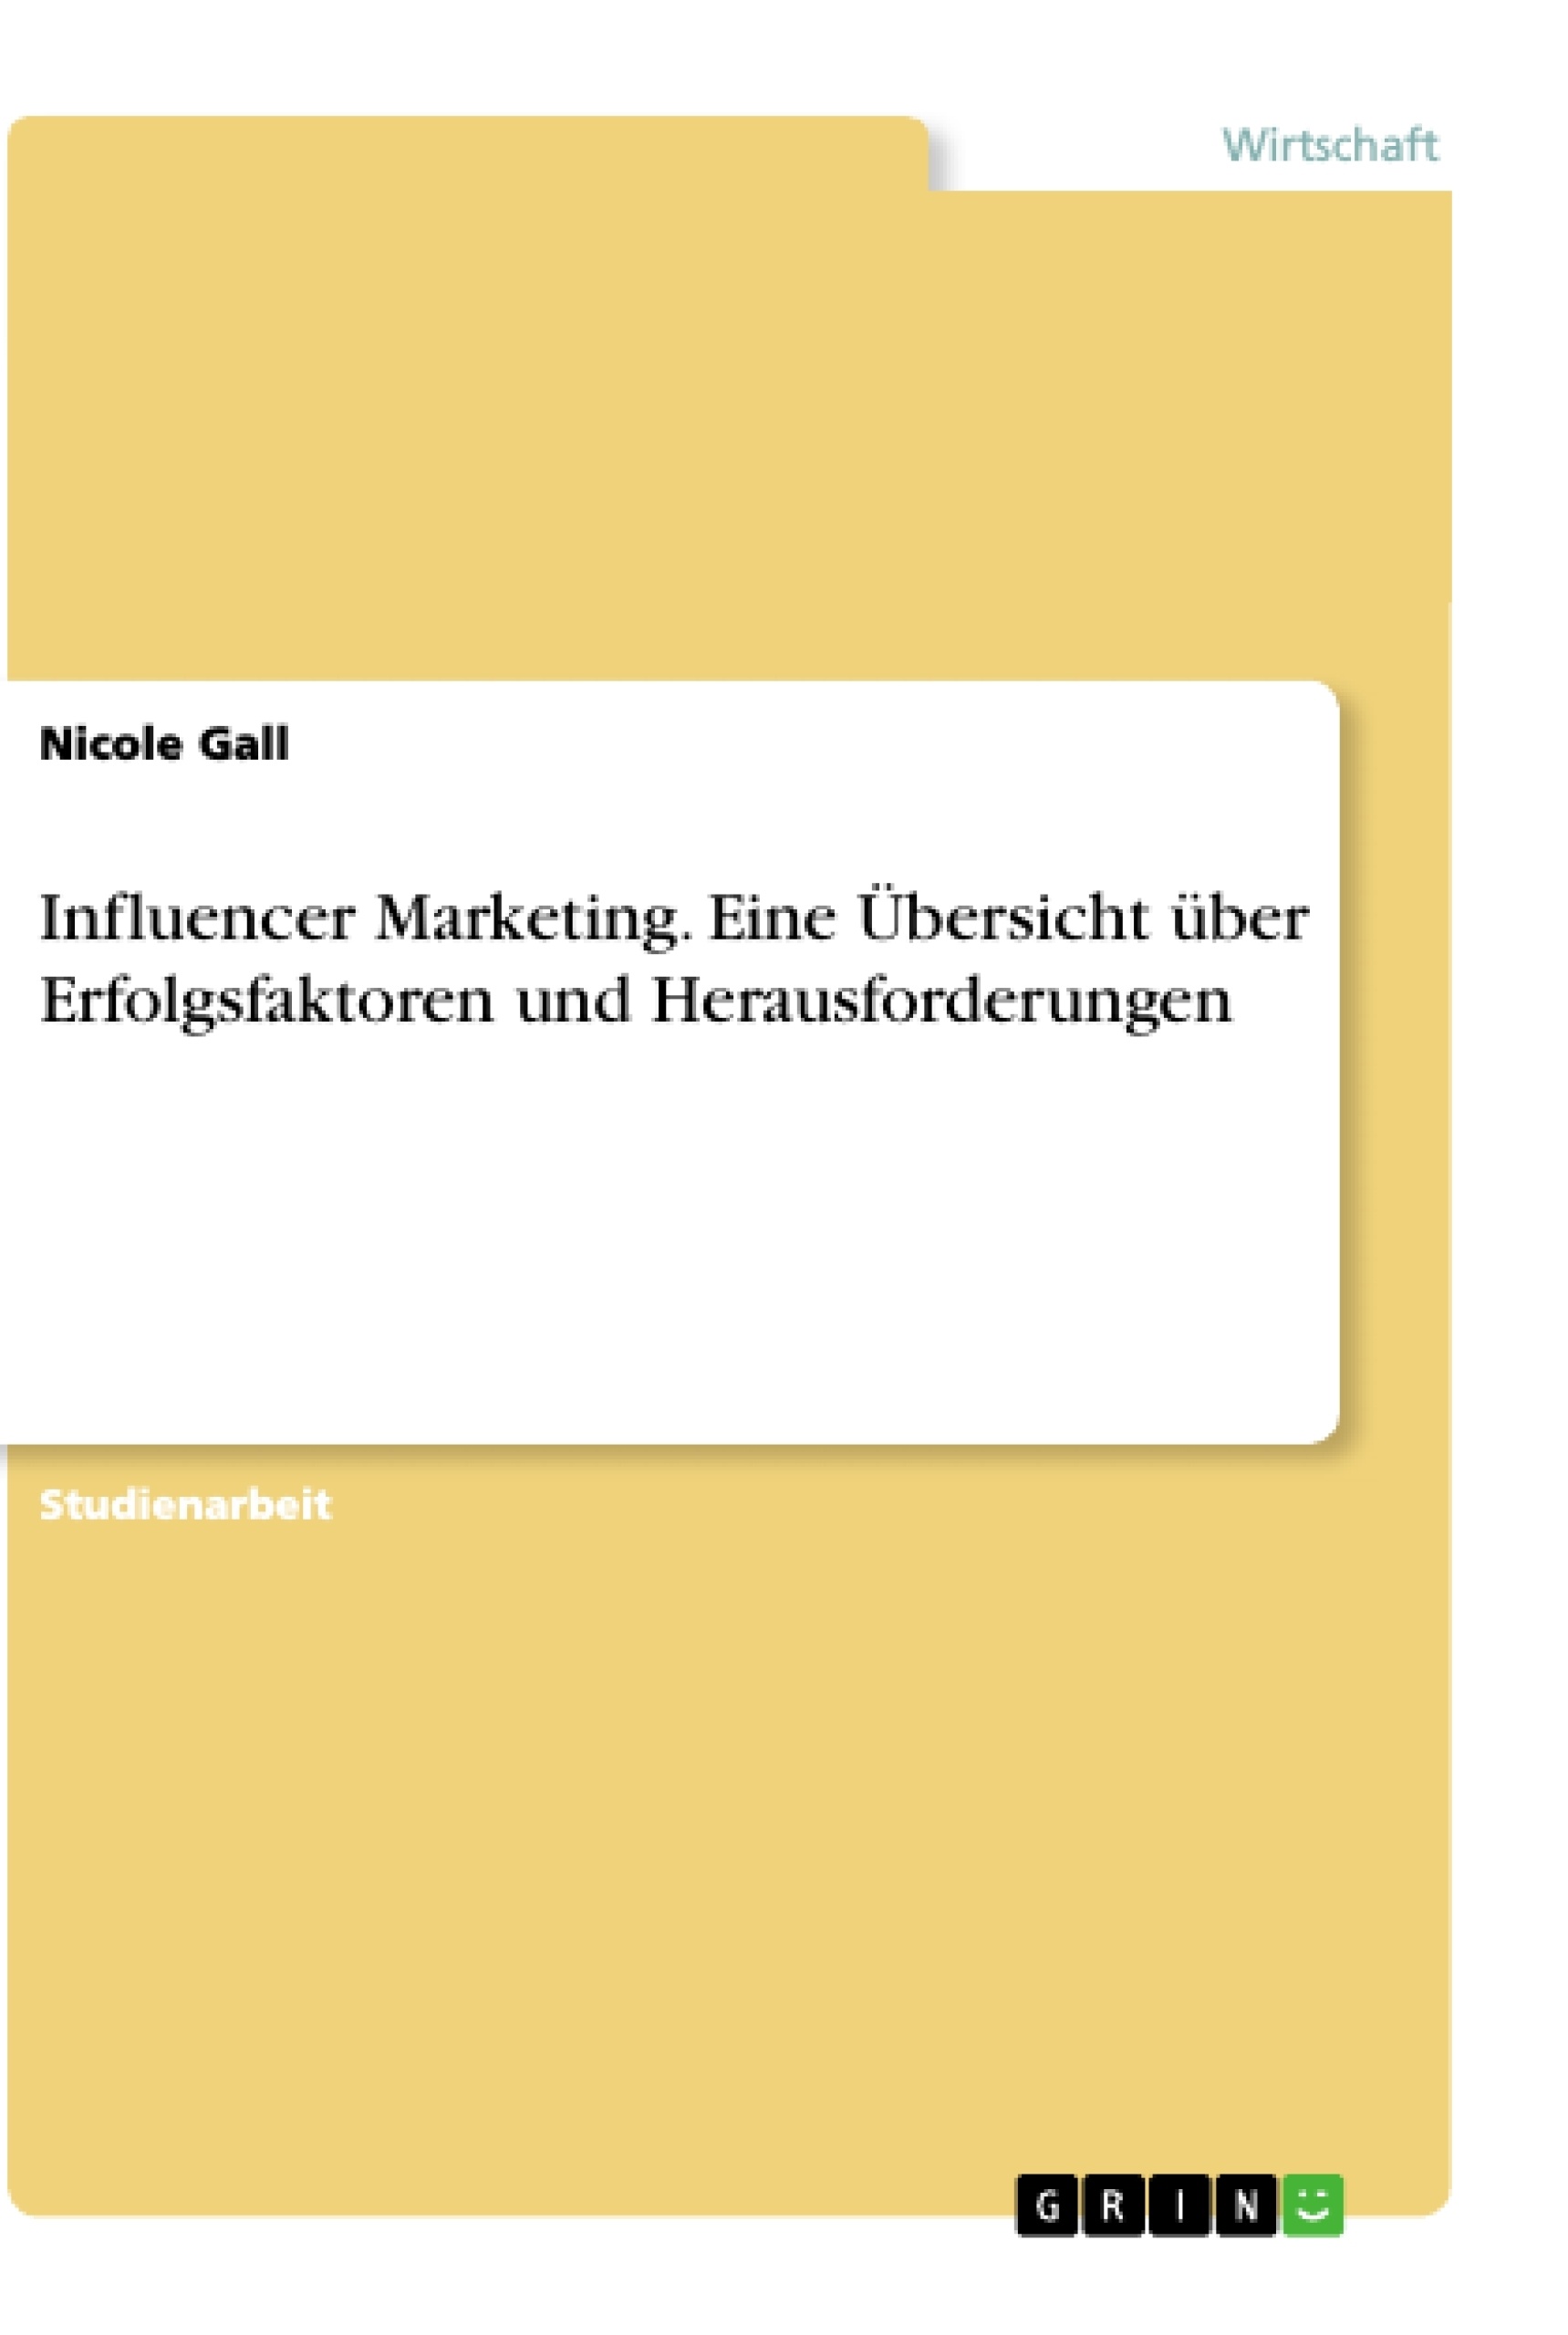 Title: Influencer Marketing. Eine Übersicht über Erfolgsfaktoren und Herausforderungen